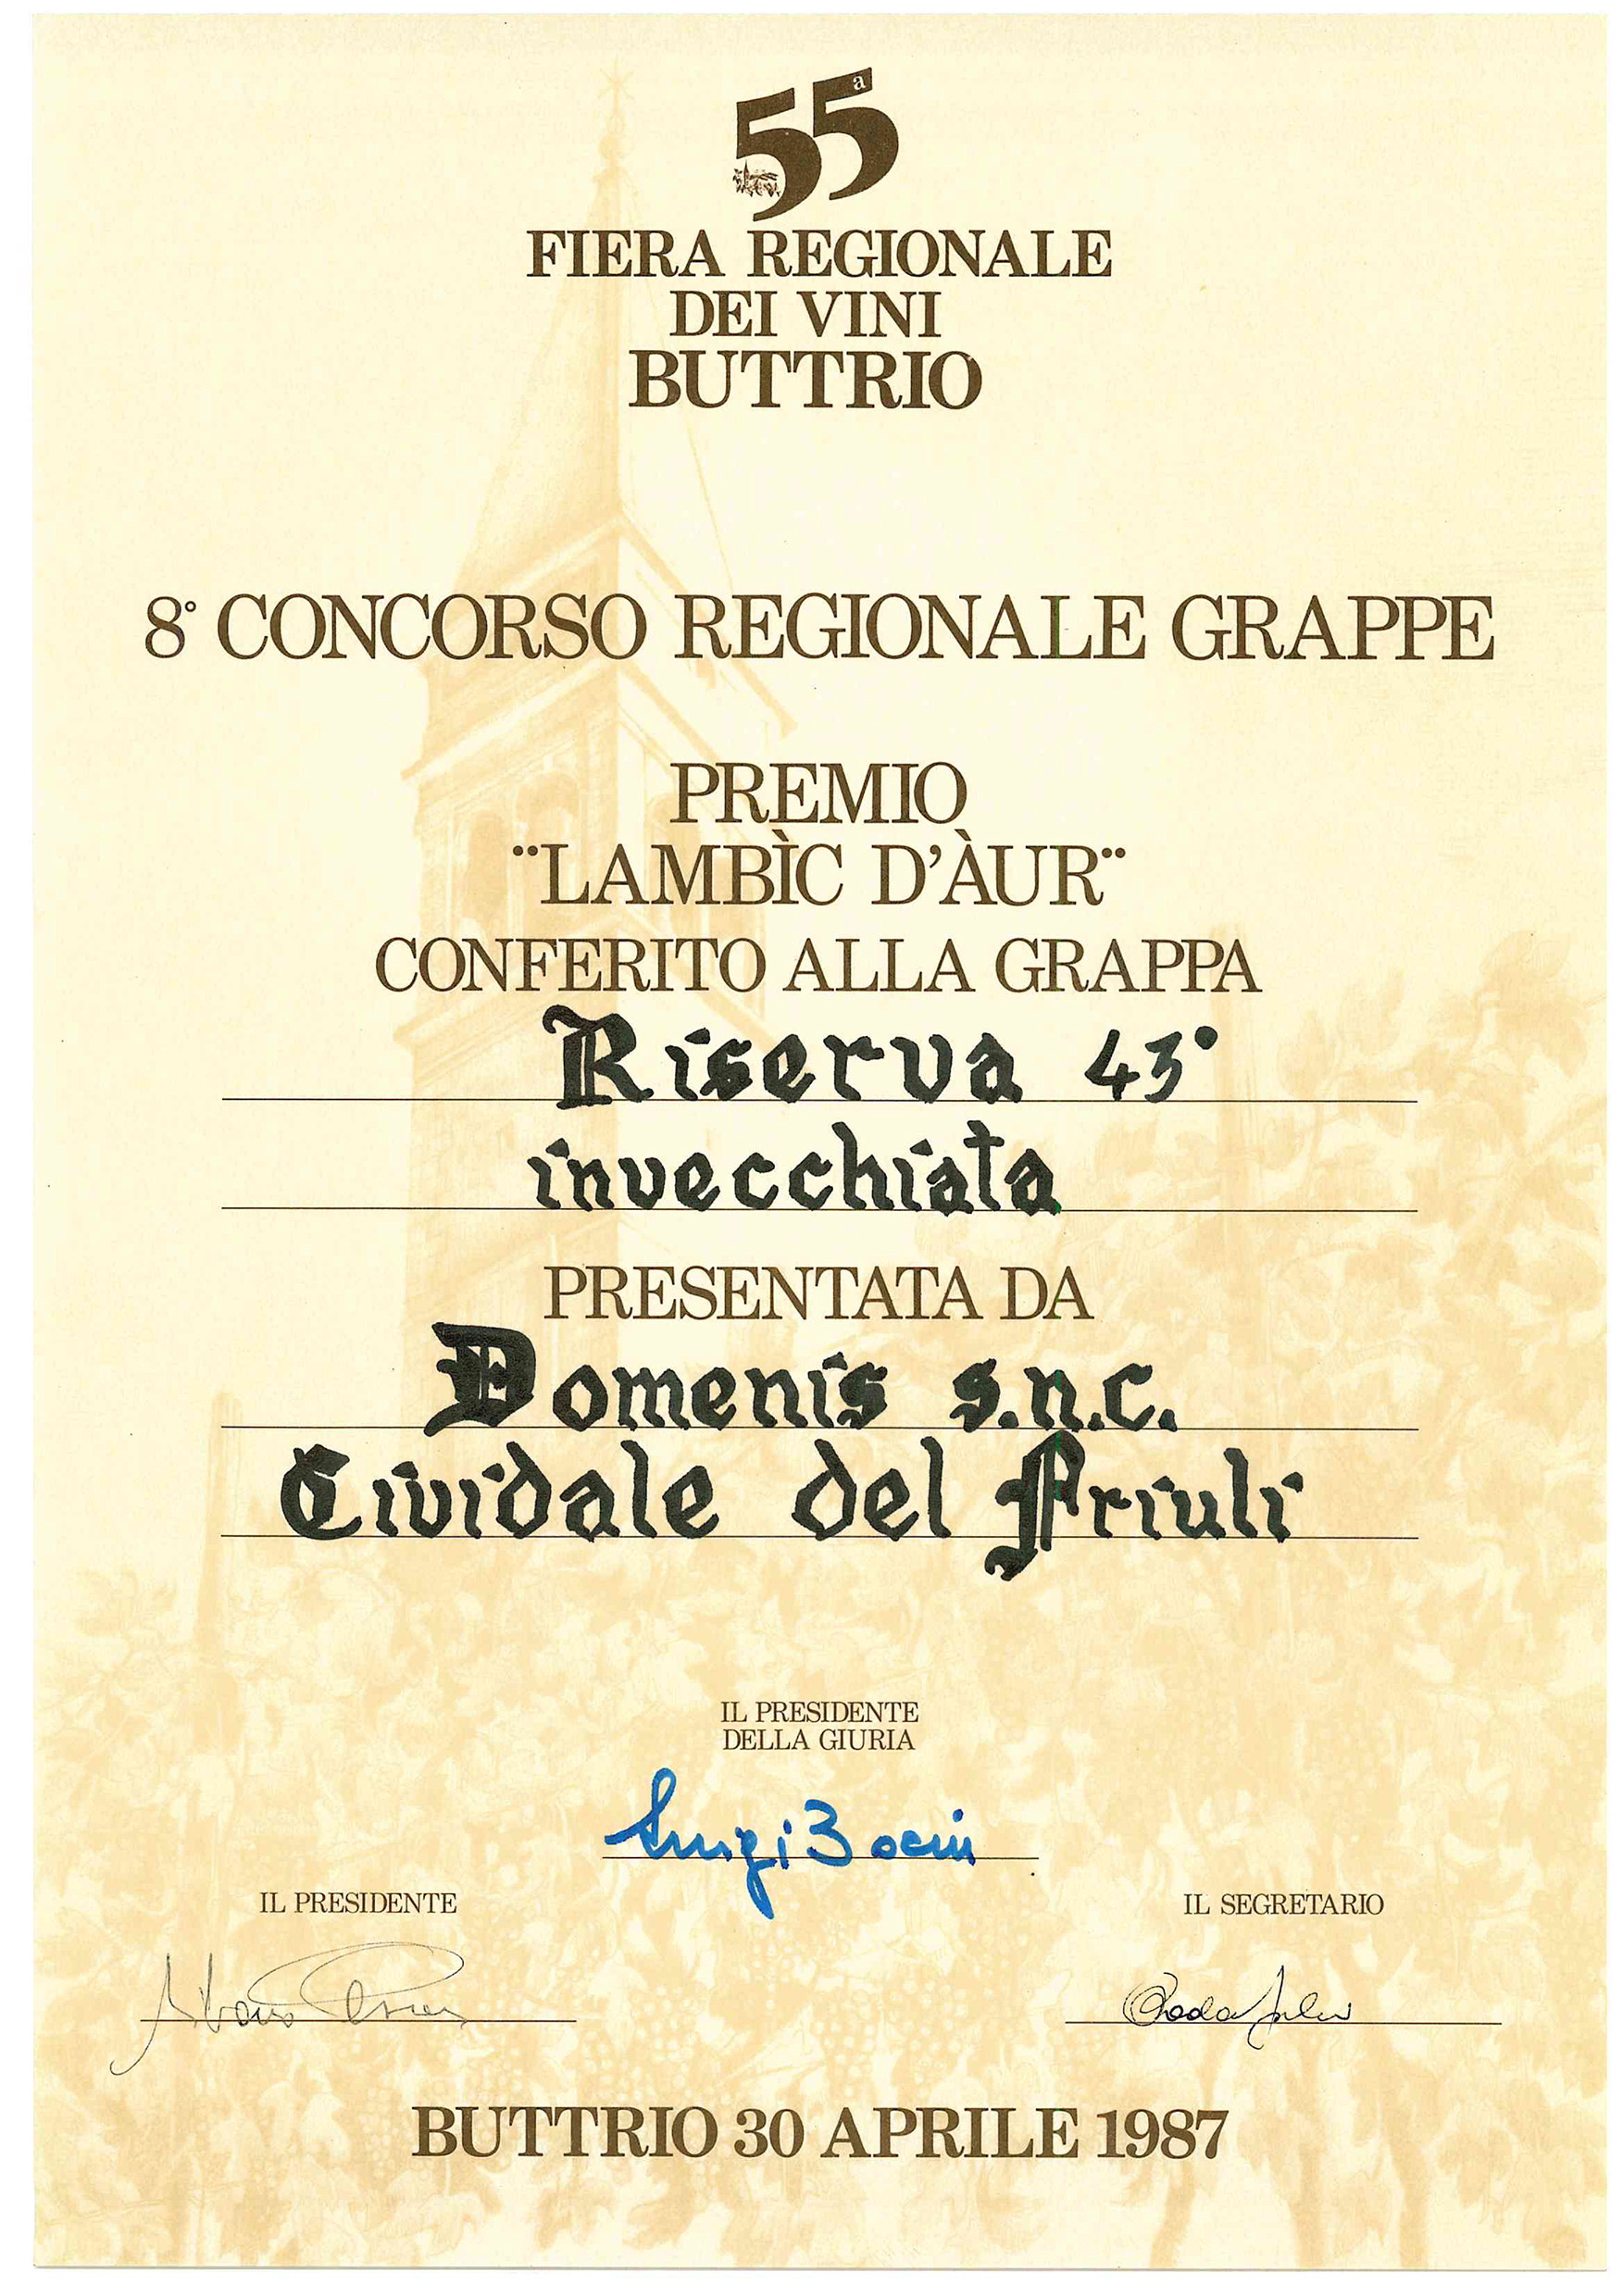 Fiera Regionale dei Vini di Buttrio 1987 – Grappa Riserva 43° invecchiata